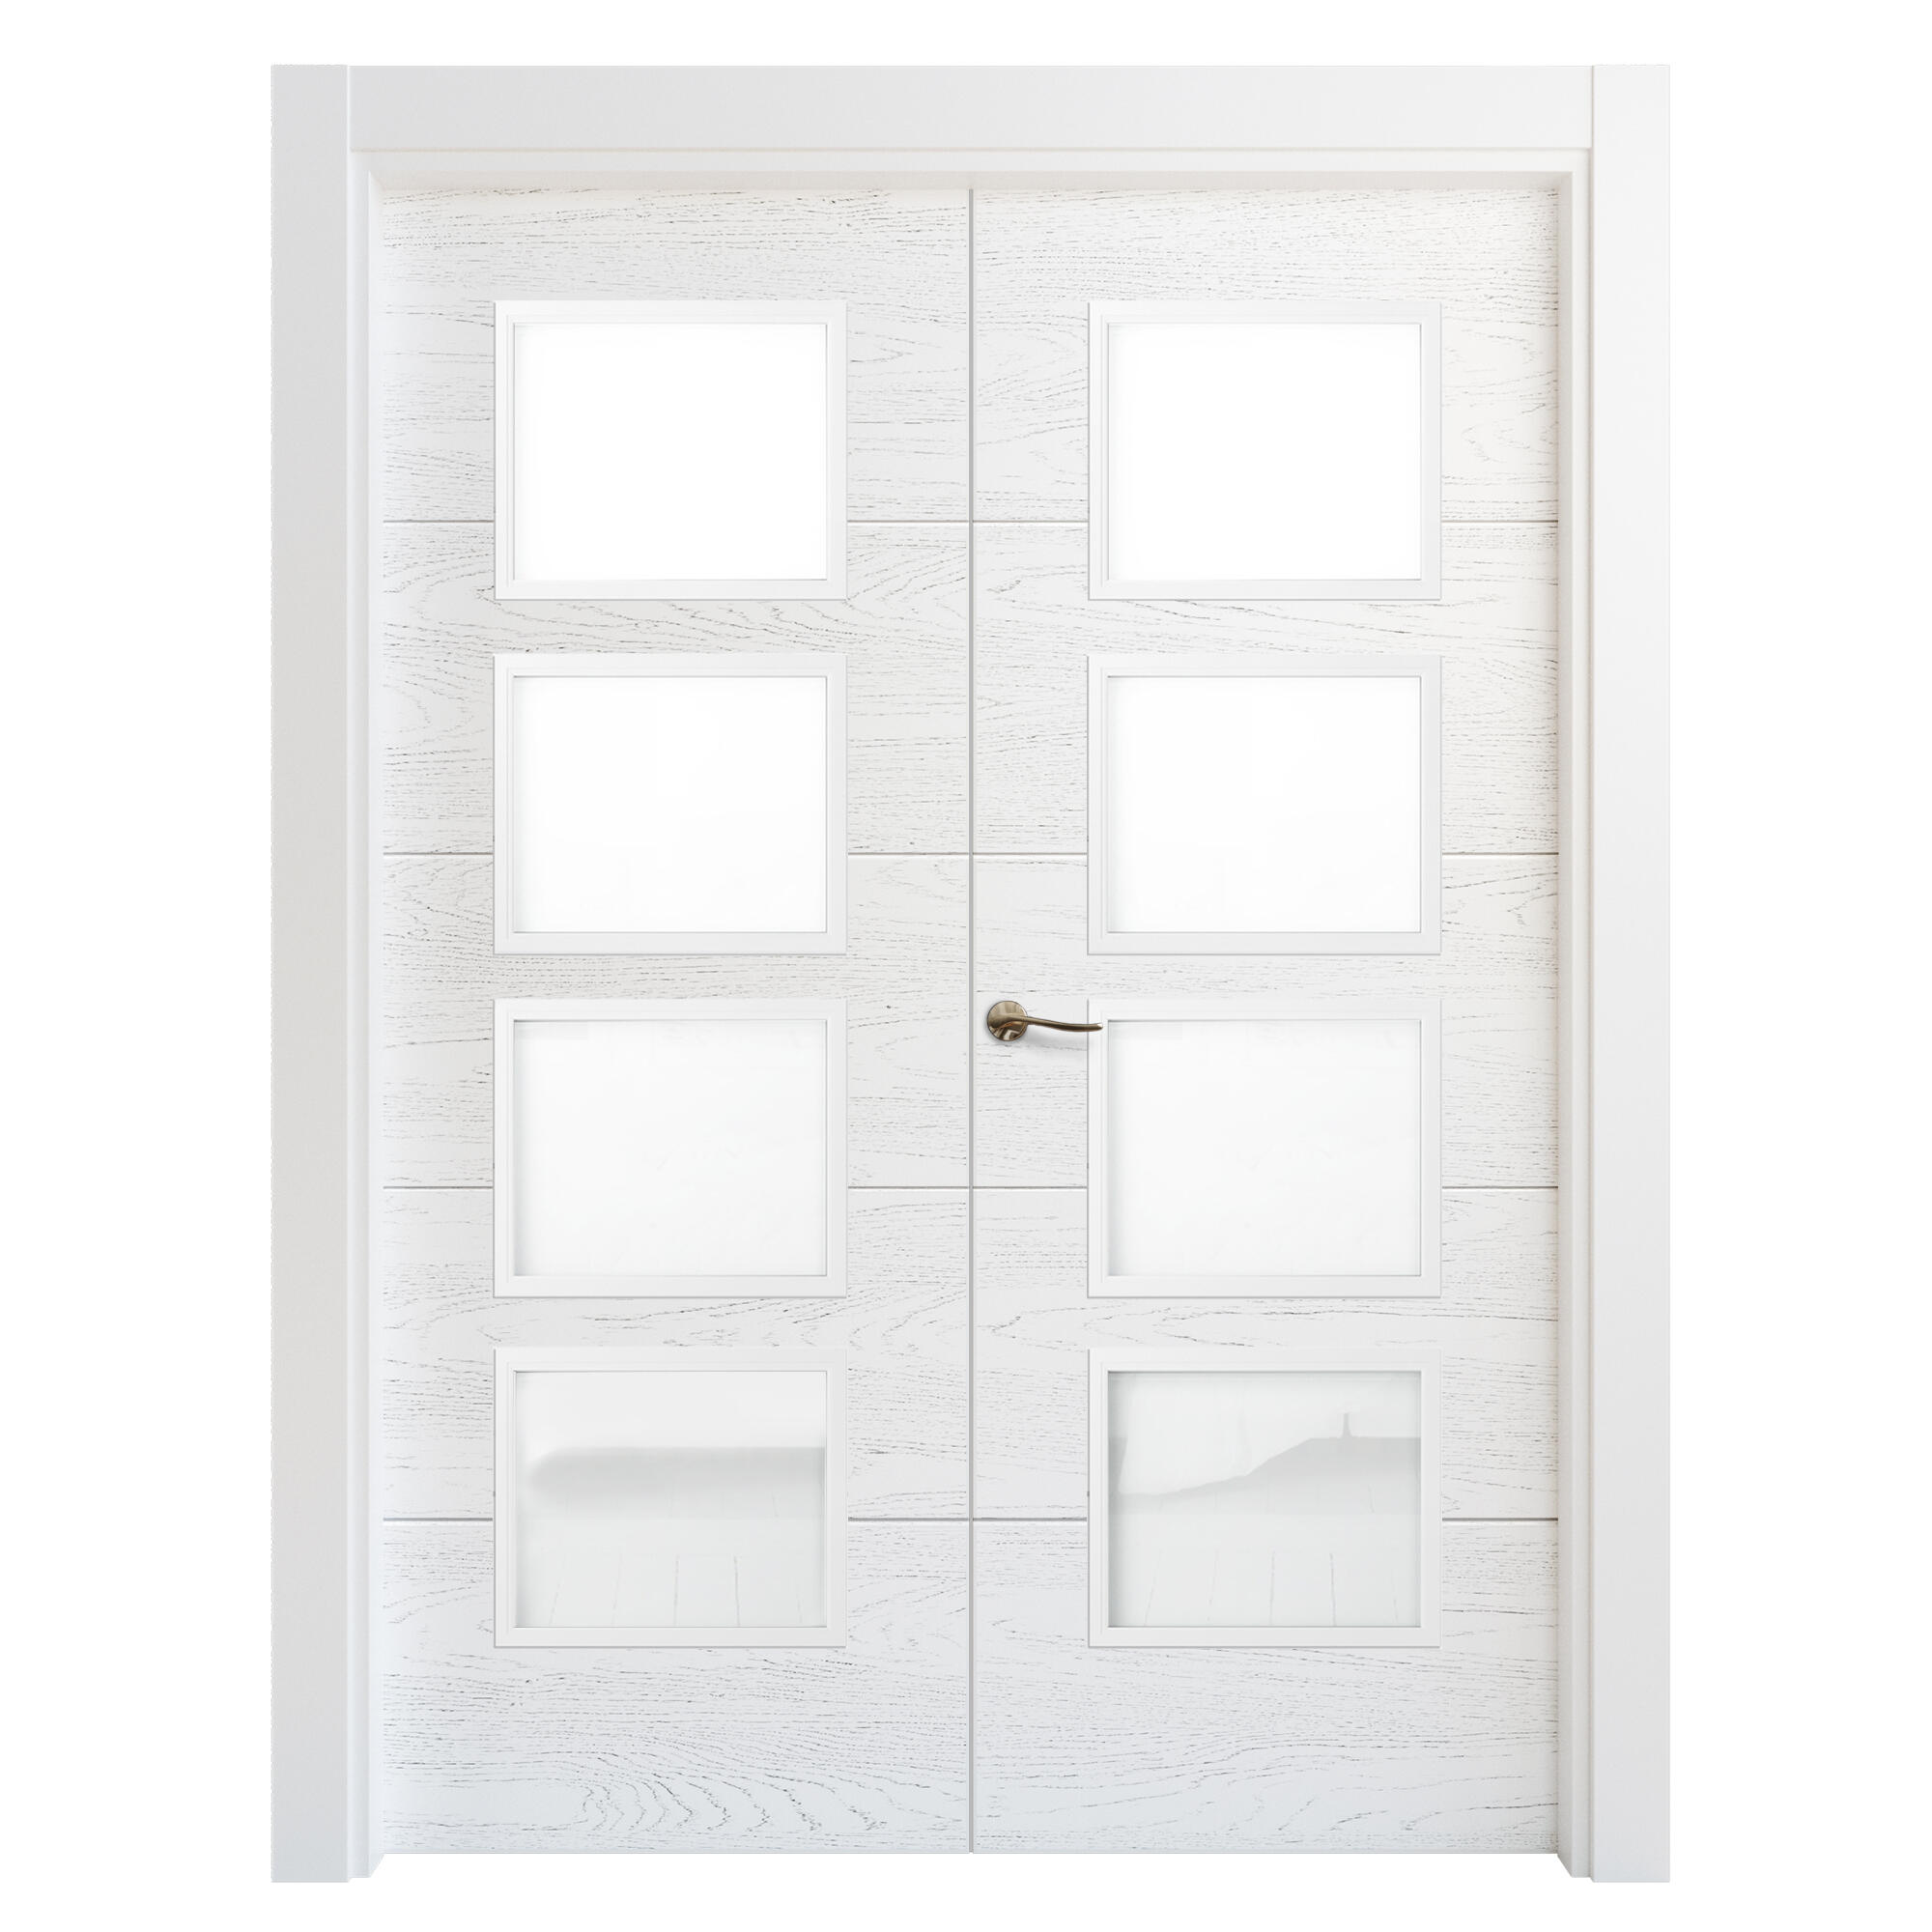 Puerta doble acristalada lucerna premium blanca i 9x125 cm